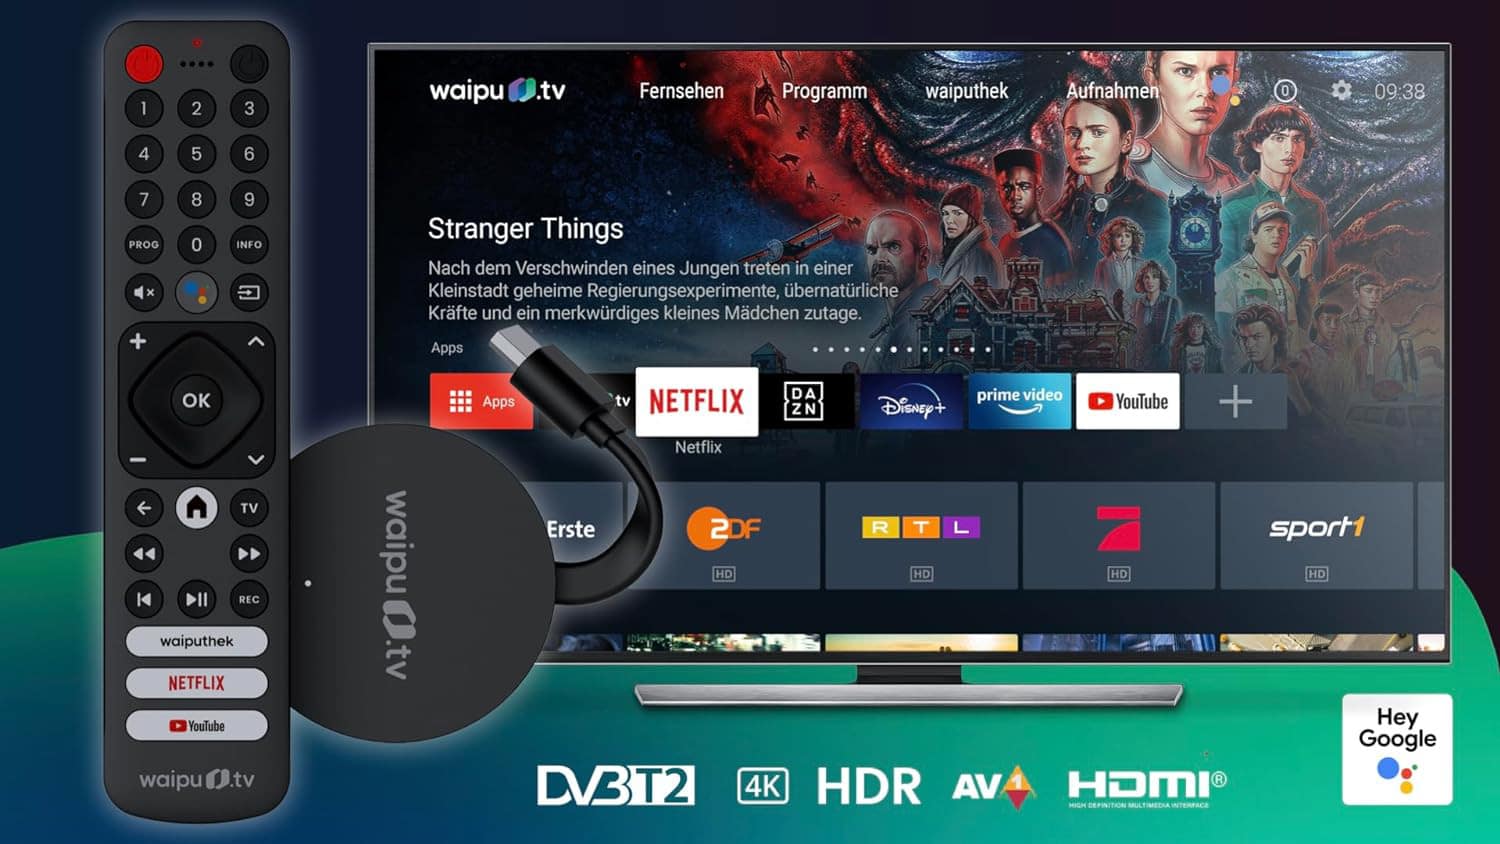 waipu.tv Hybrid TV Stick mit Fernseher und Angebotsauswahl